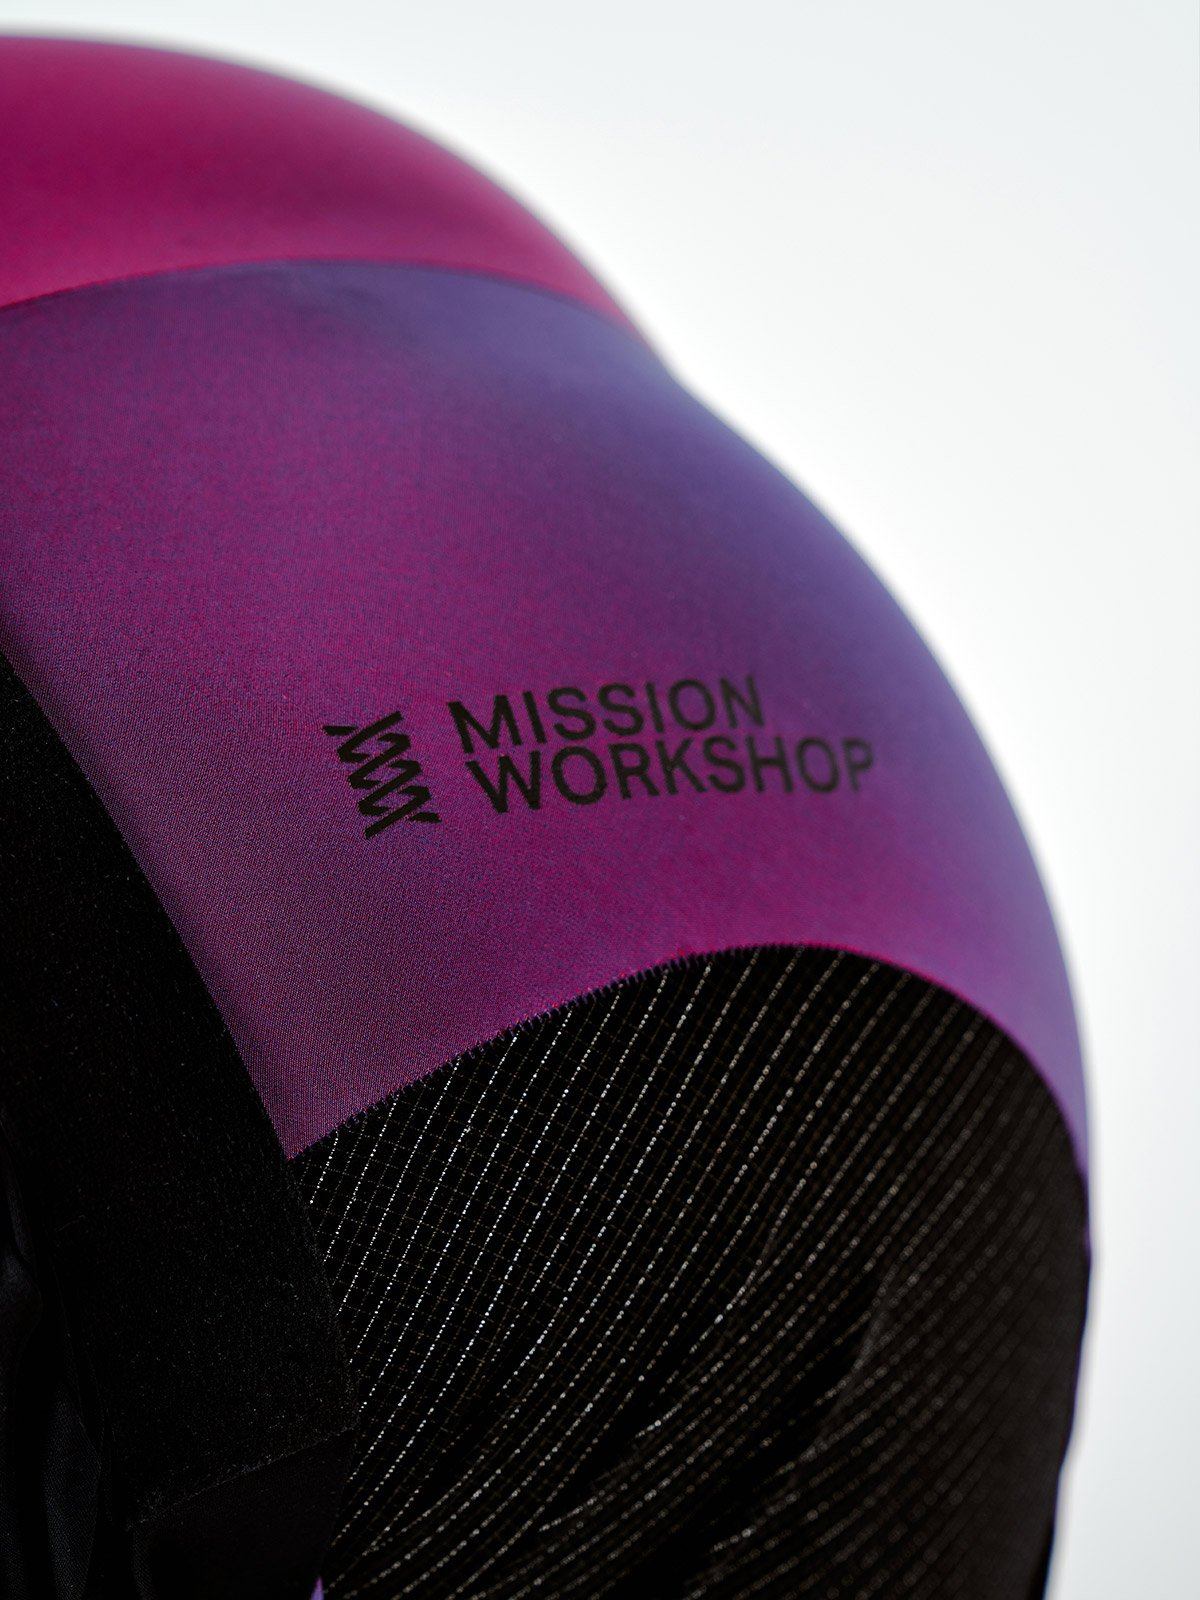 Mission Pro Bib Men's by Mission Workshop - Weerbestendige tassen & technische kleding - San Francisco & Los Angeles - Gemaakt om te weerstaan - Voor altijd gegarandeerd